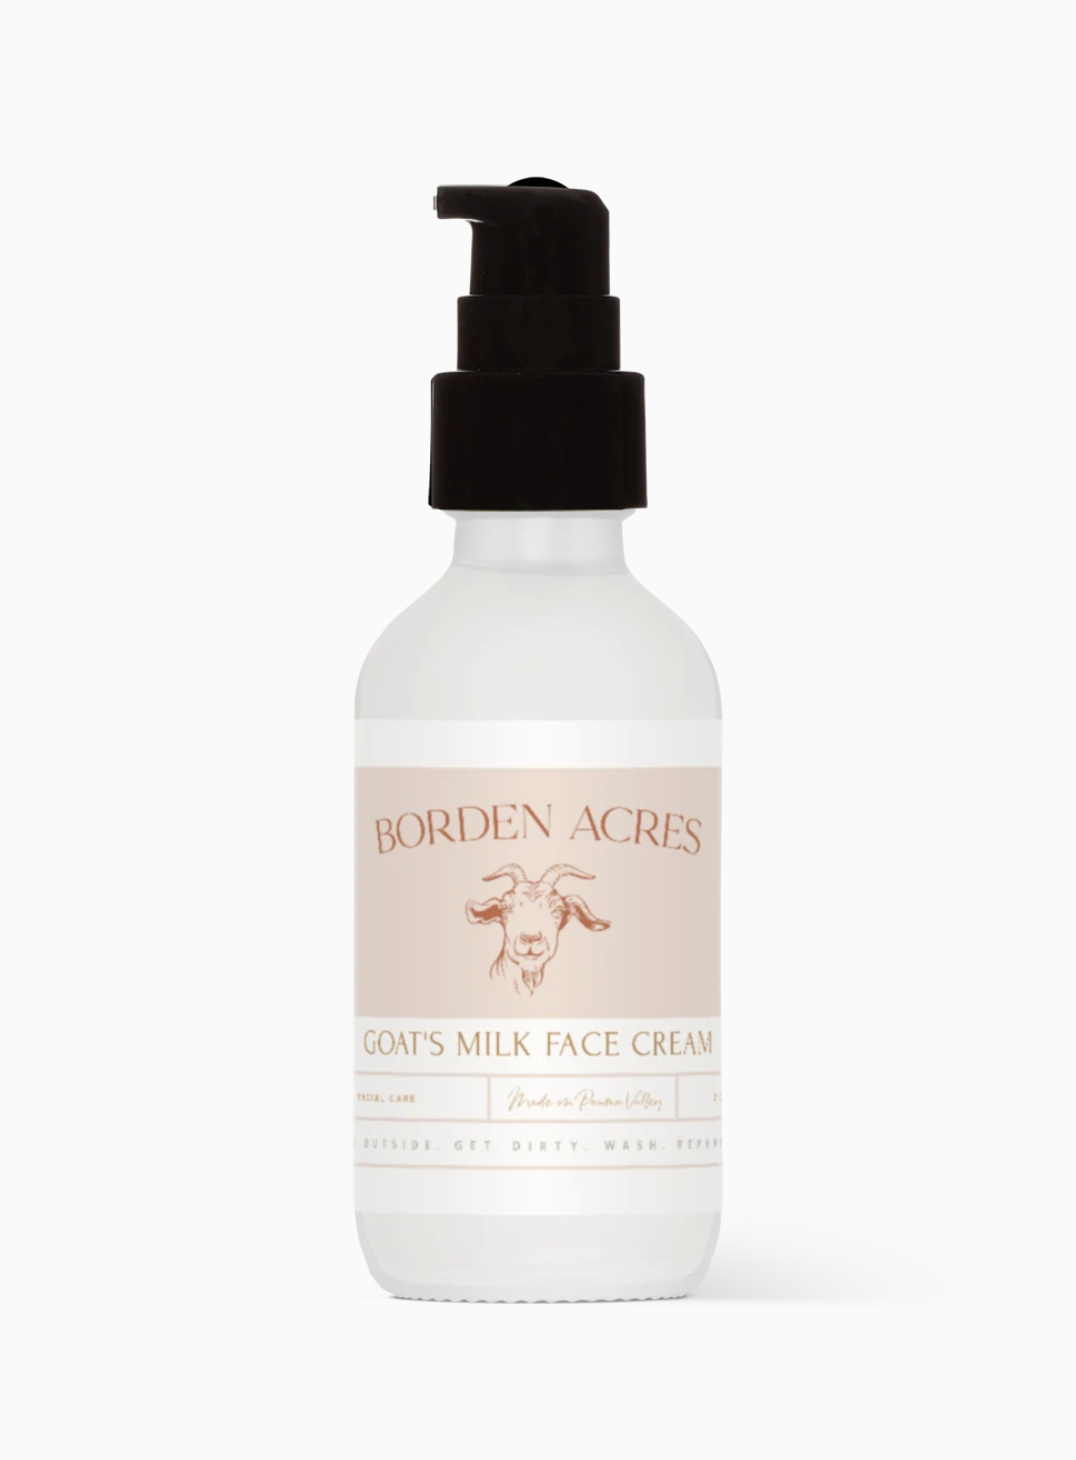 Borden Acres Face Cream - CJ Gift Shoppe